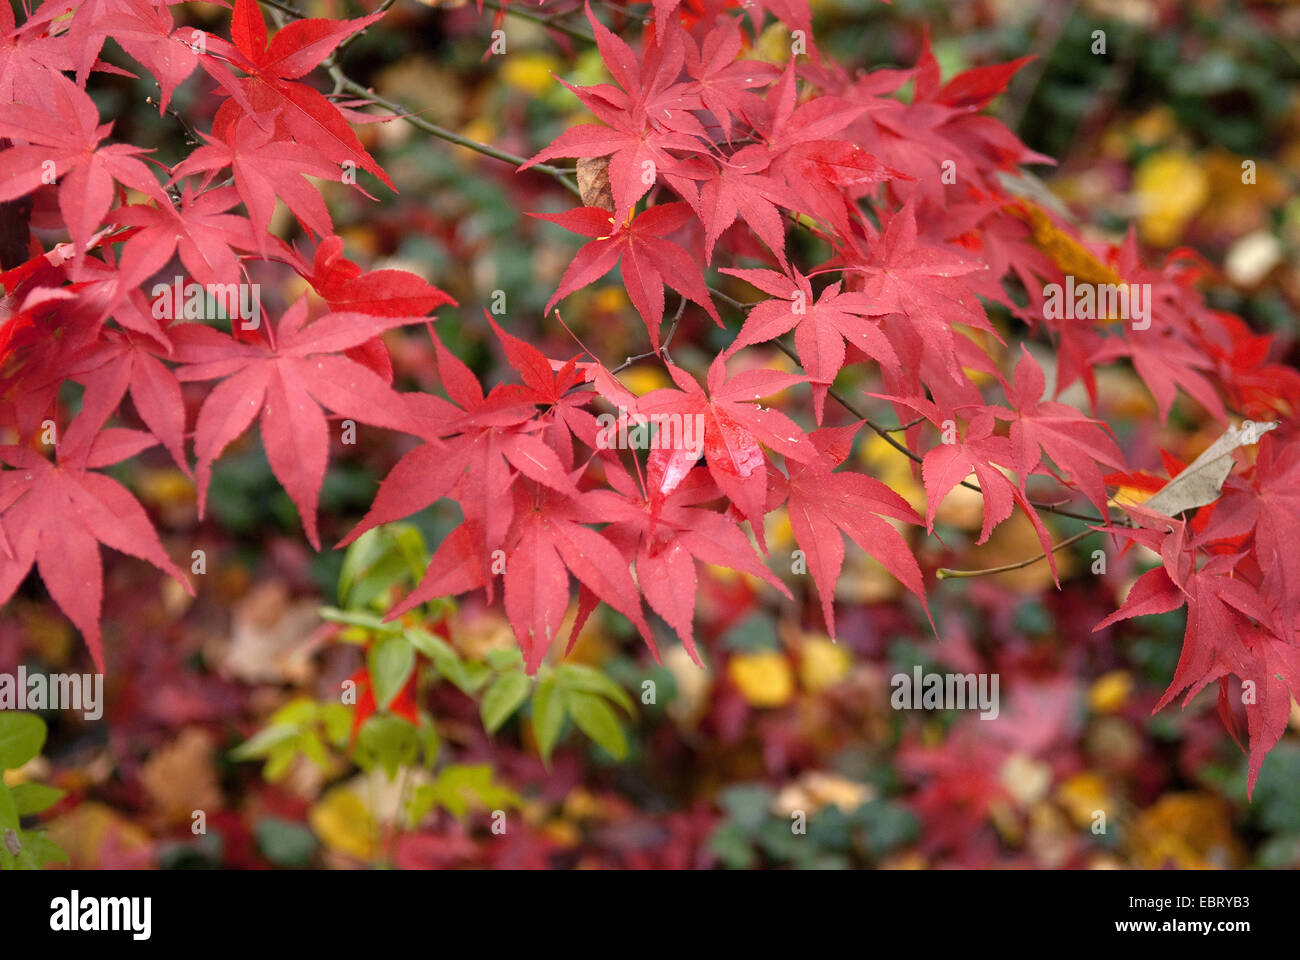 Japanese maple (Acer palmatum 'Osakazuki', Acer palmatum Osakazuki), branch with autumn leaves Stock Photo